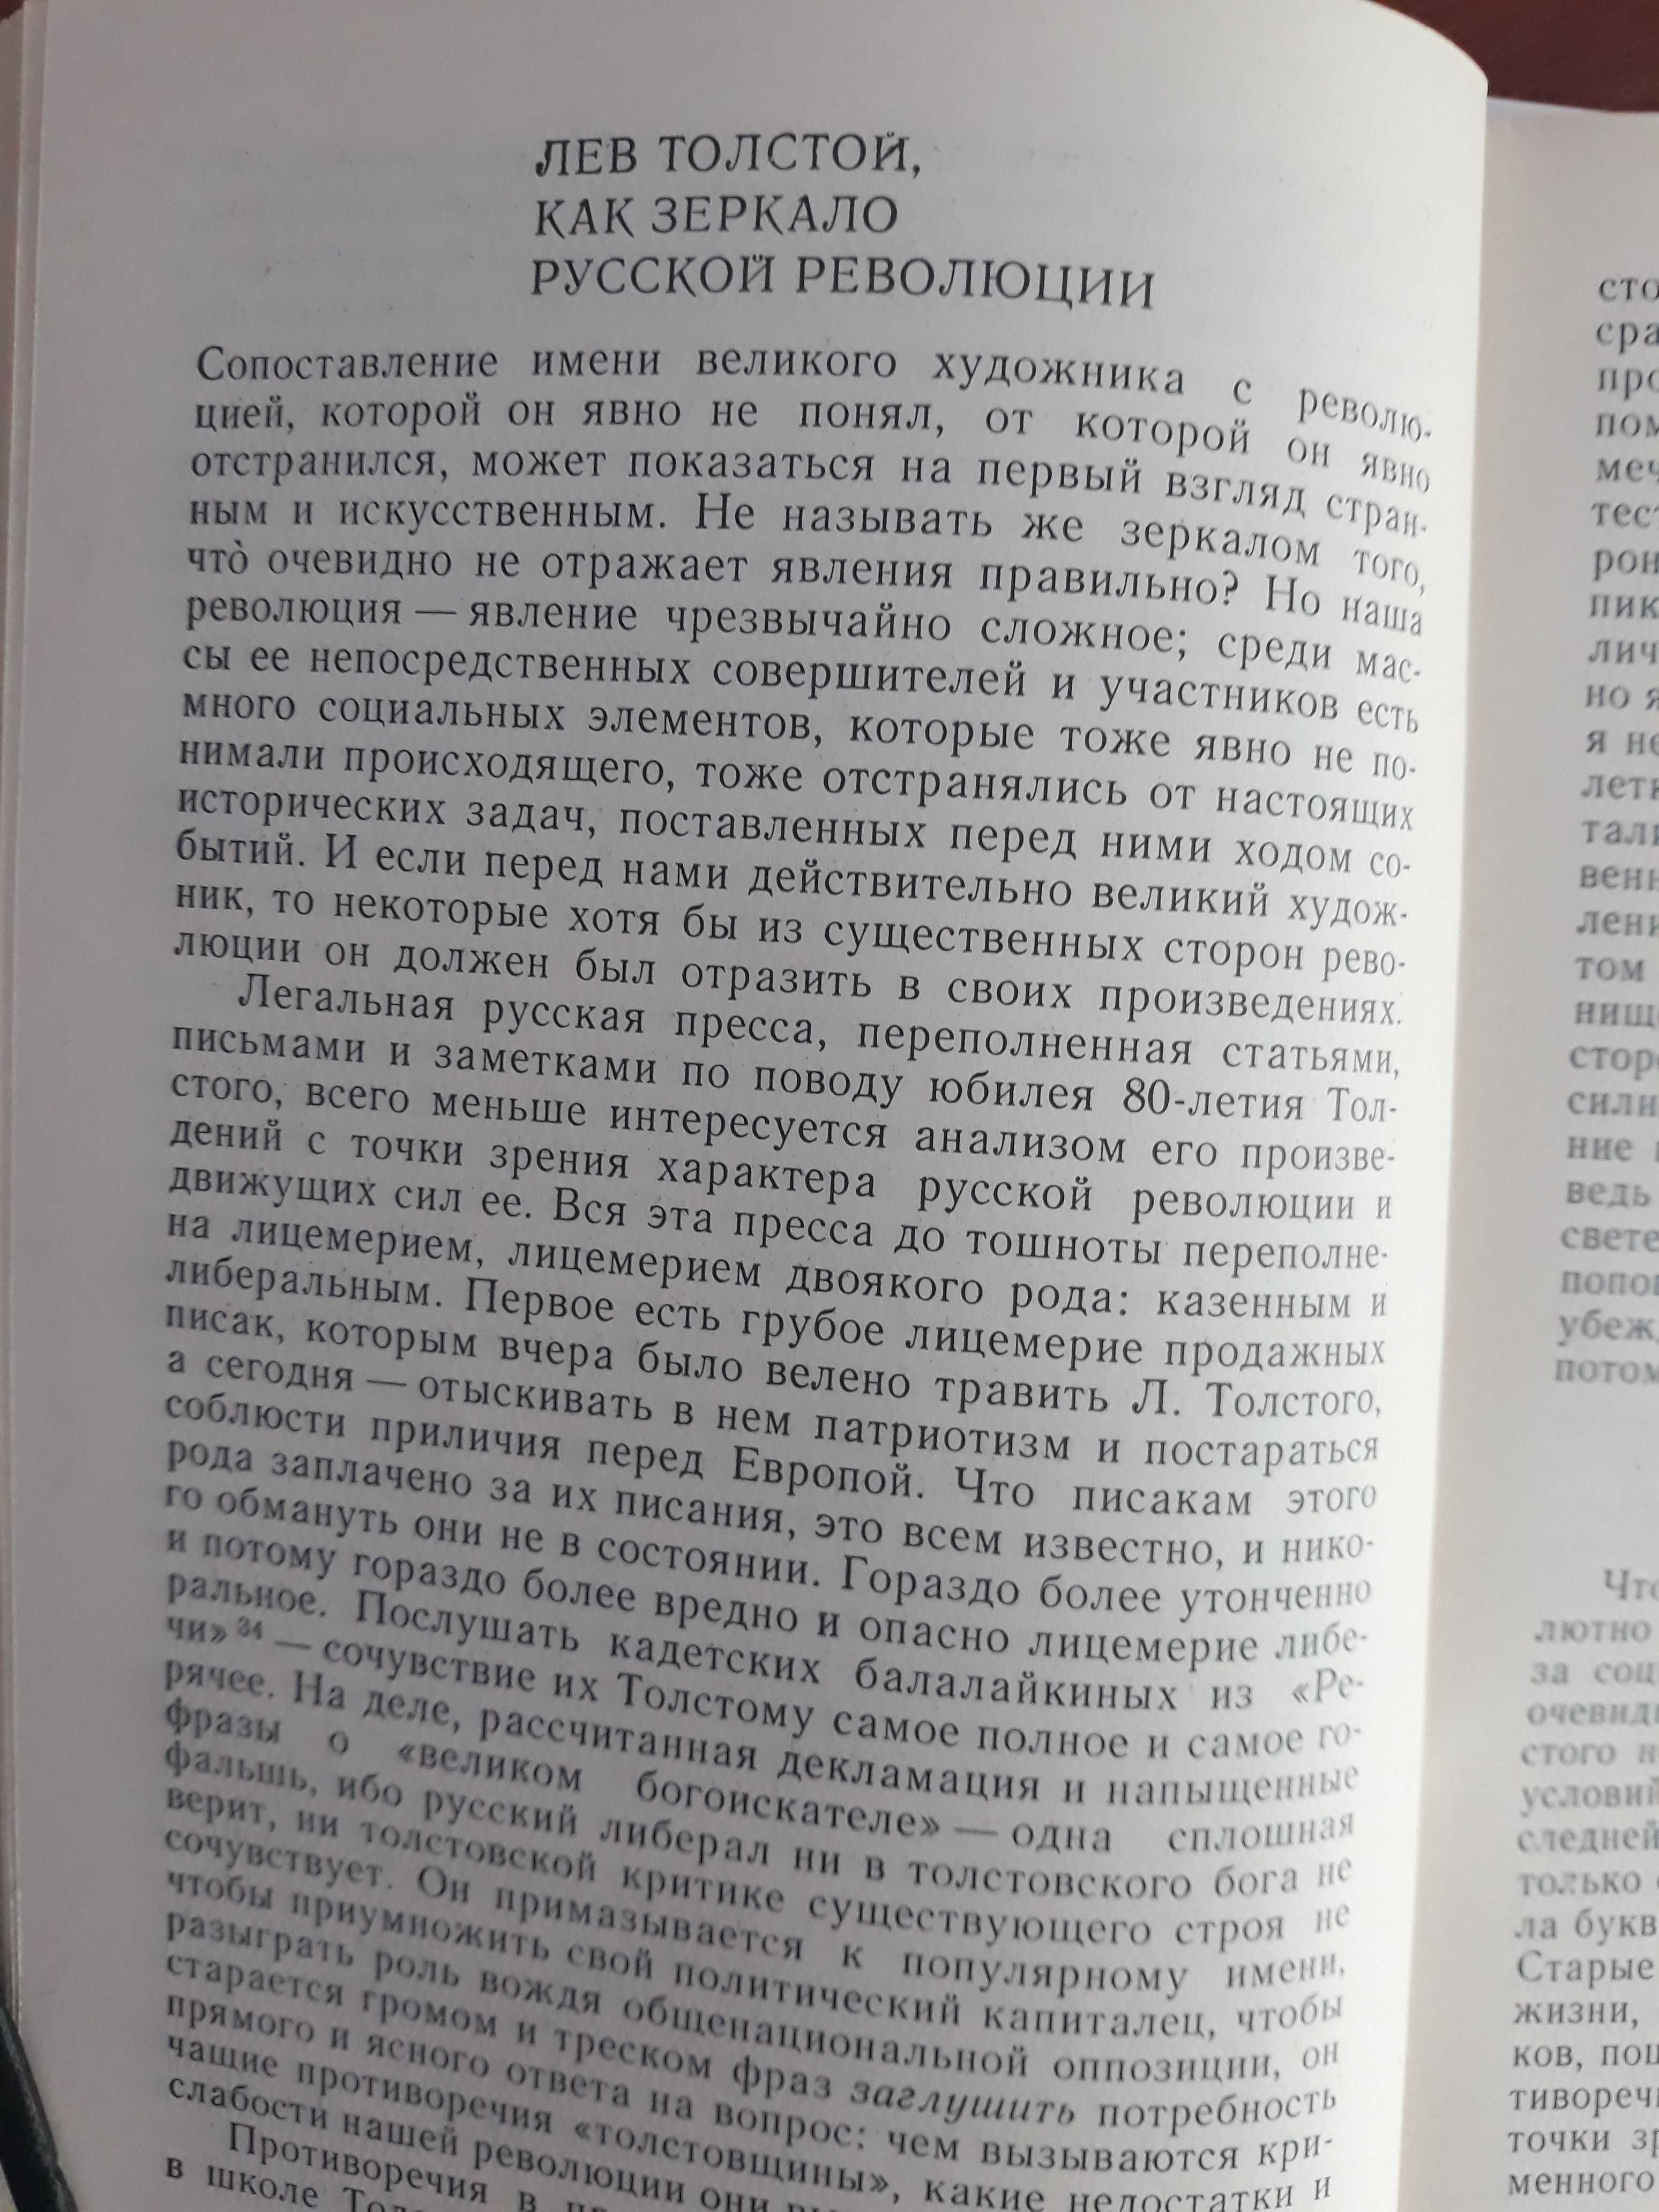 Продам книгу "Ленин и книга". Составитель Окороков.